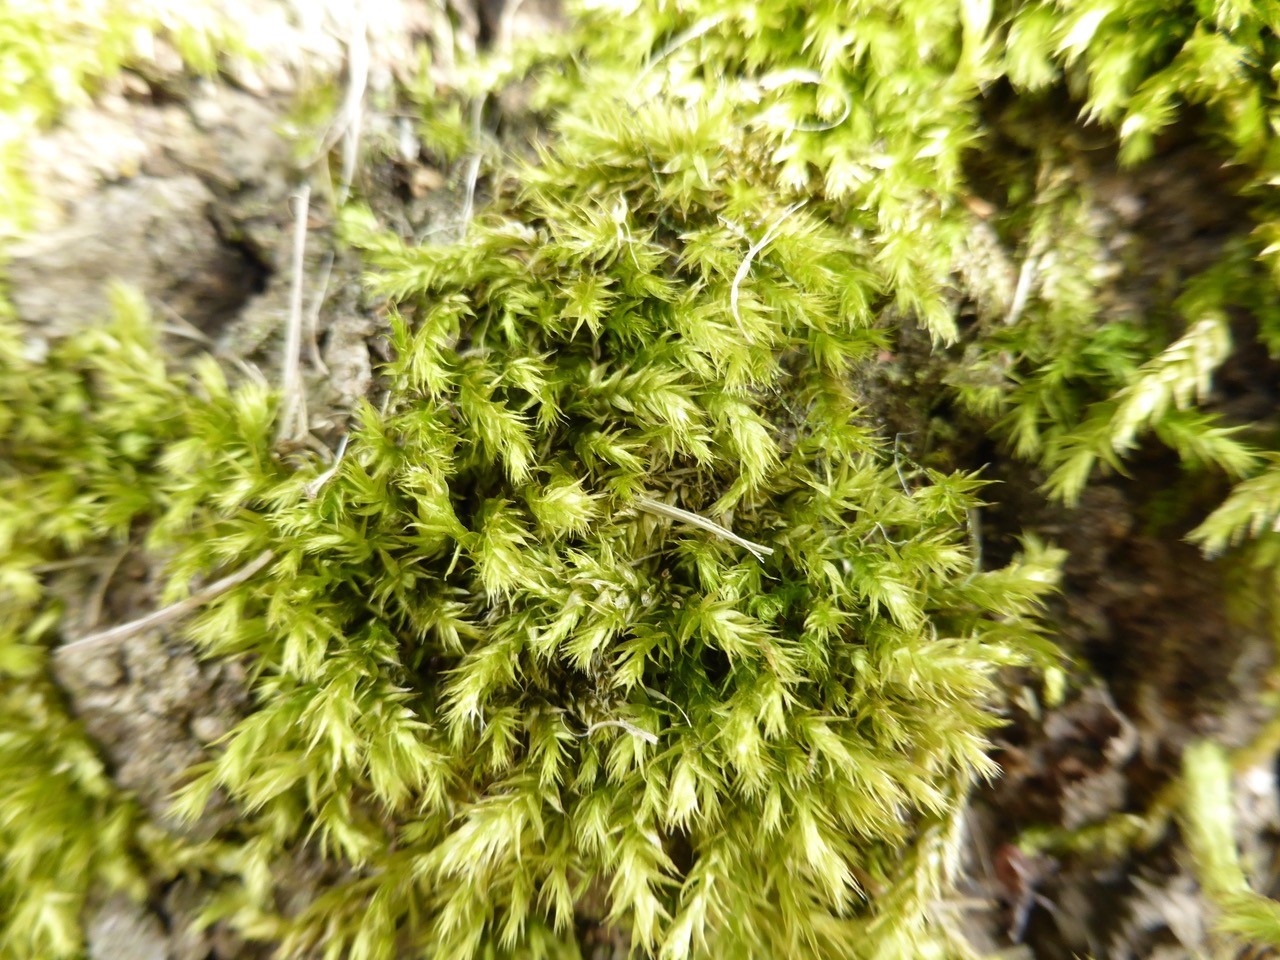 Brachythecium rutabulum - Rough-stalked Feather-moss, Wentworth Garden Centre.